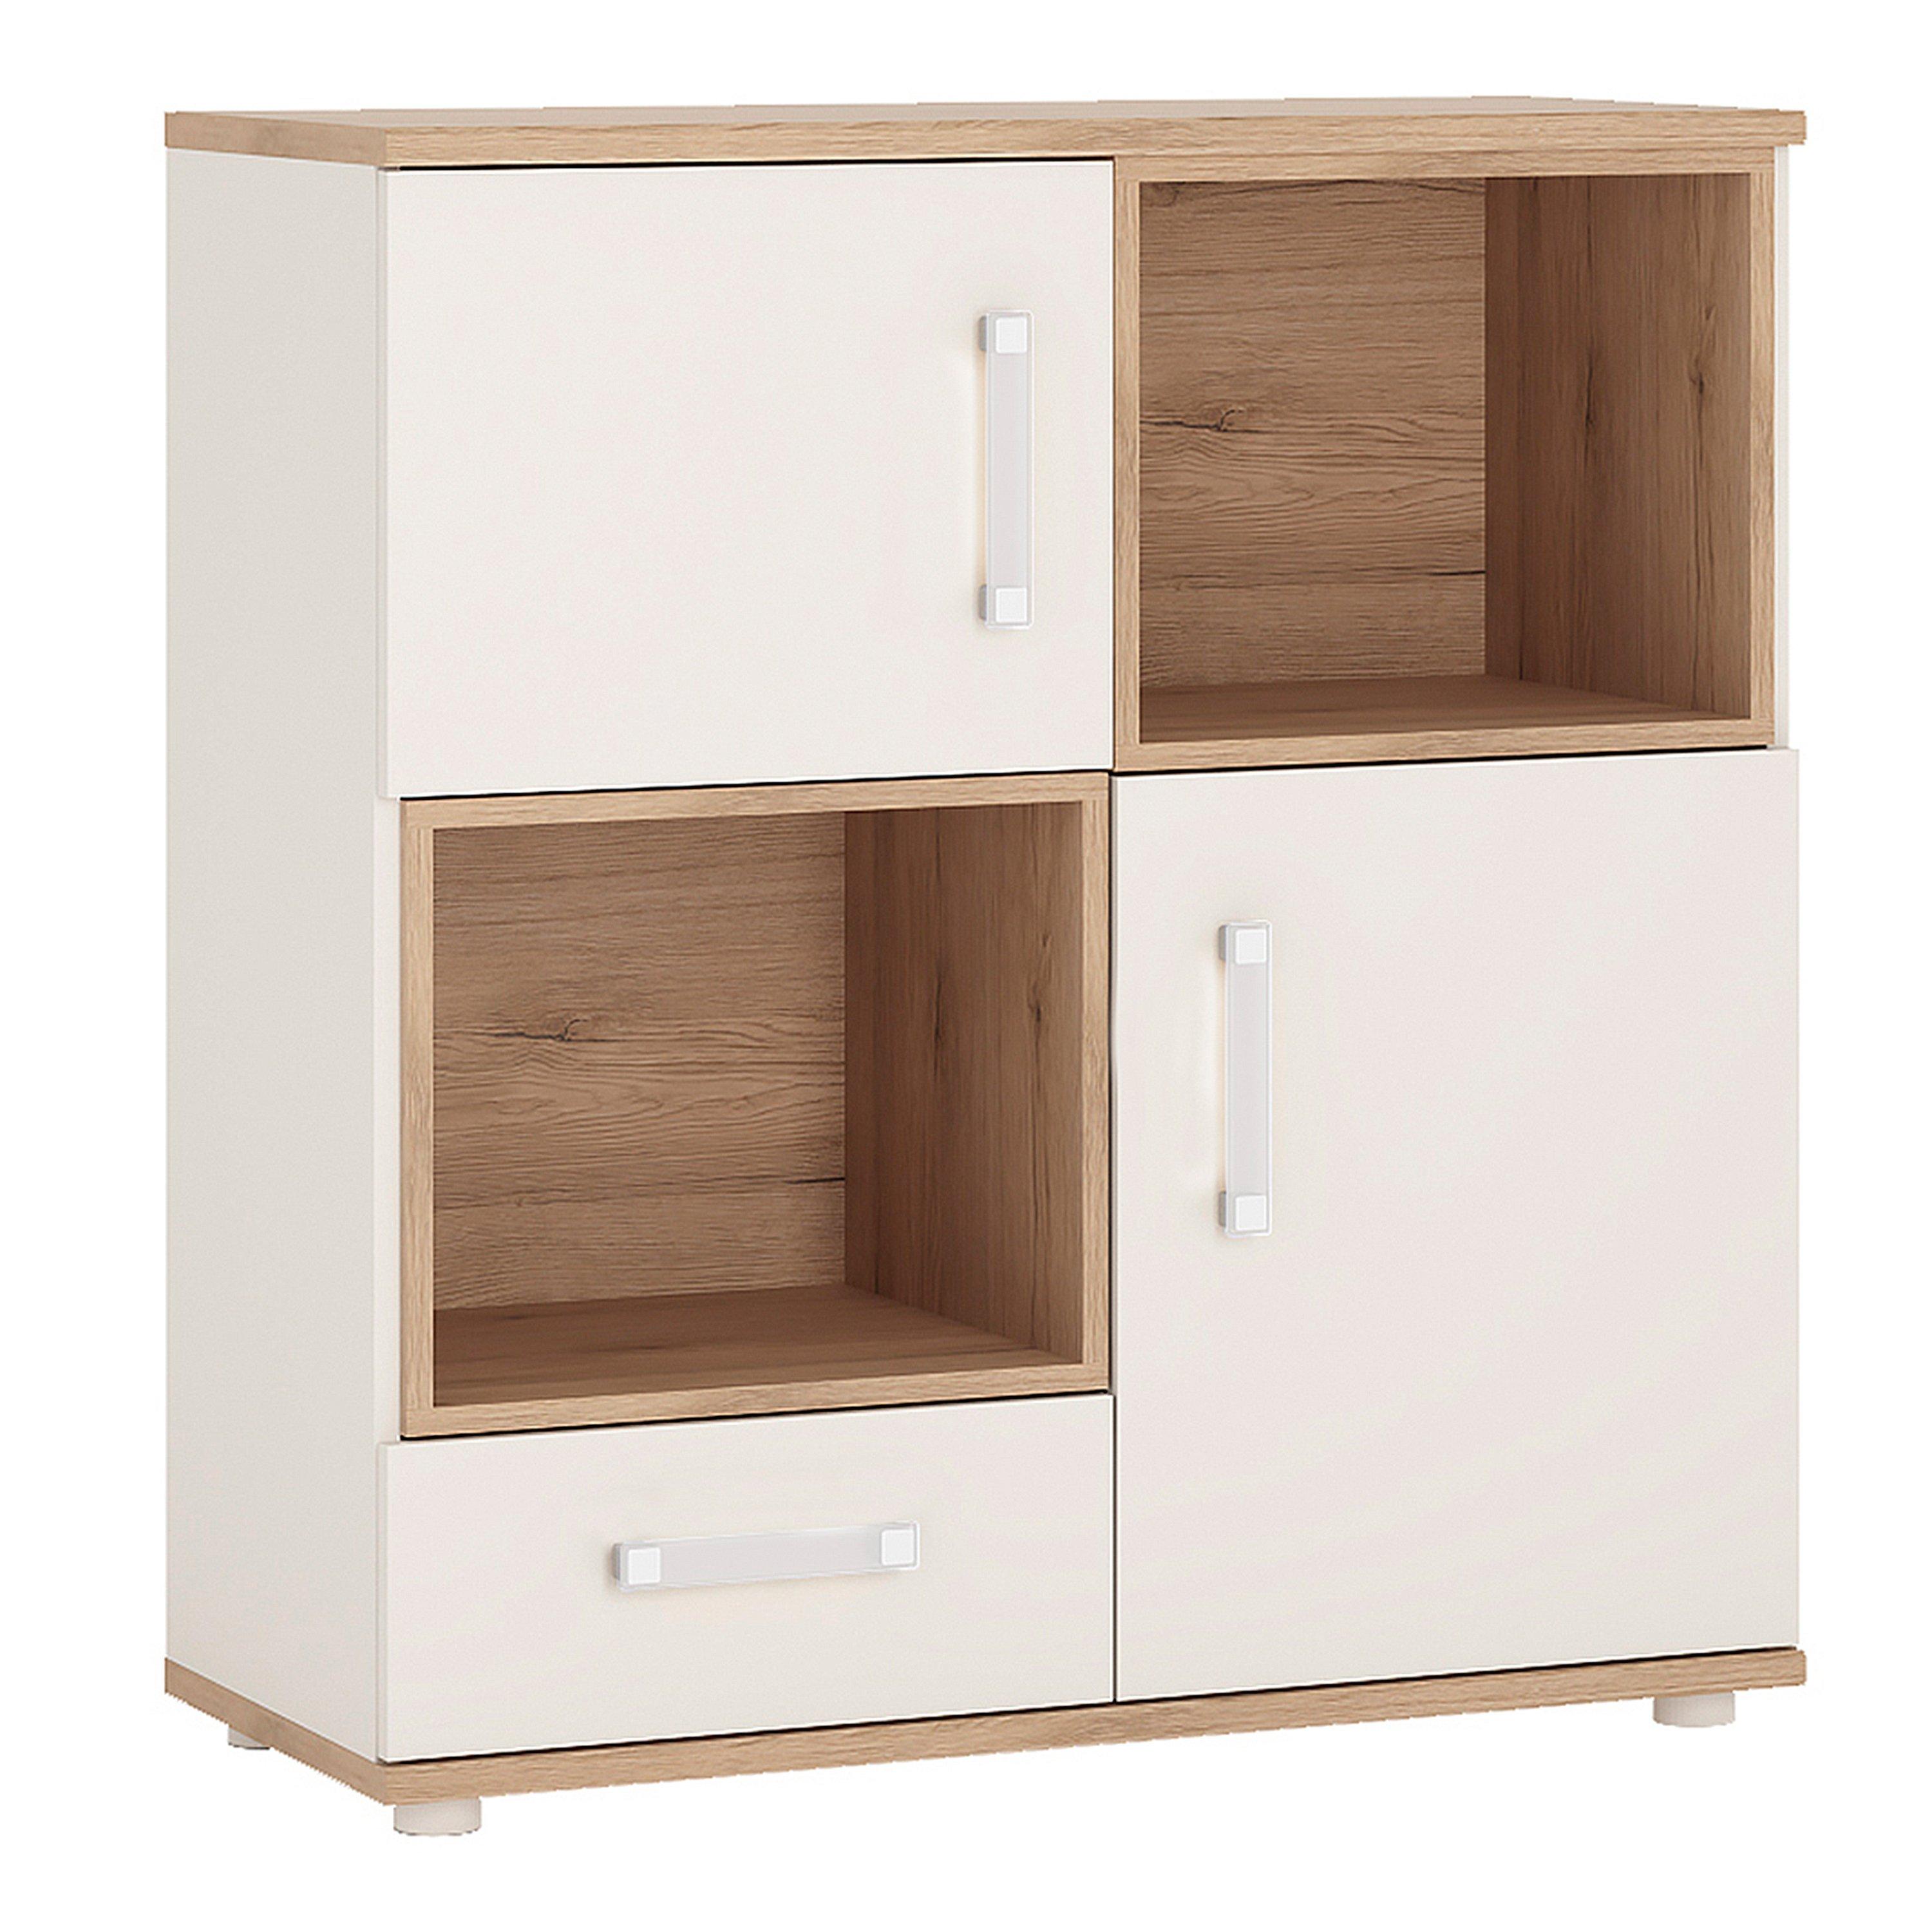 4KIDS 2 Door 1 Drawer Cupboard with 2 Open Shelves